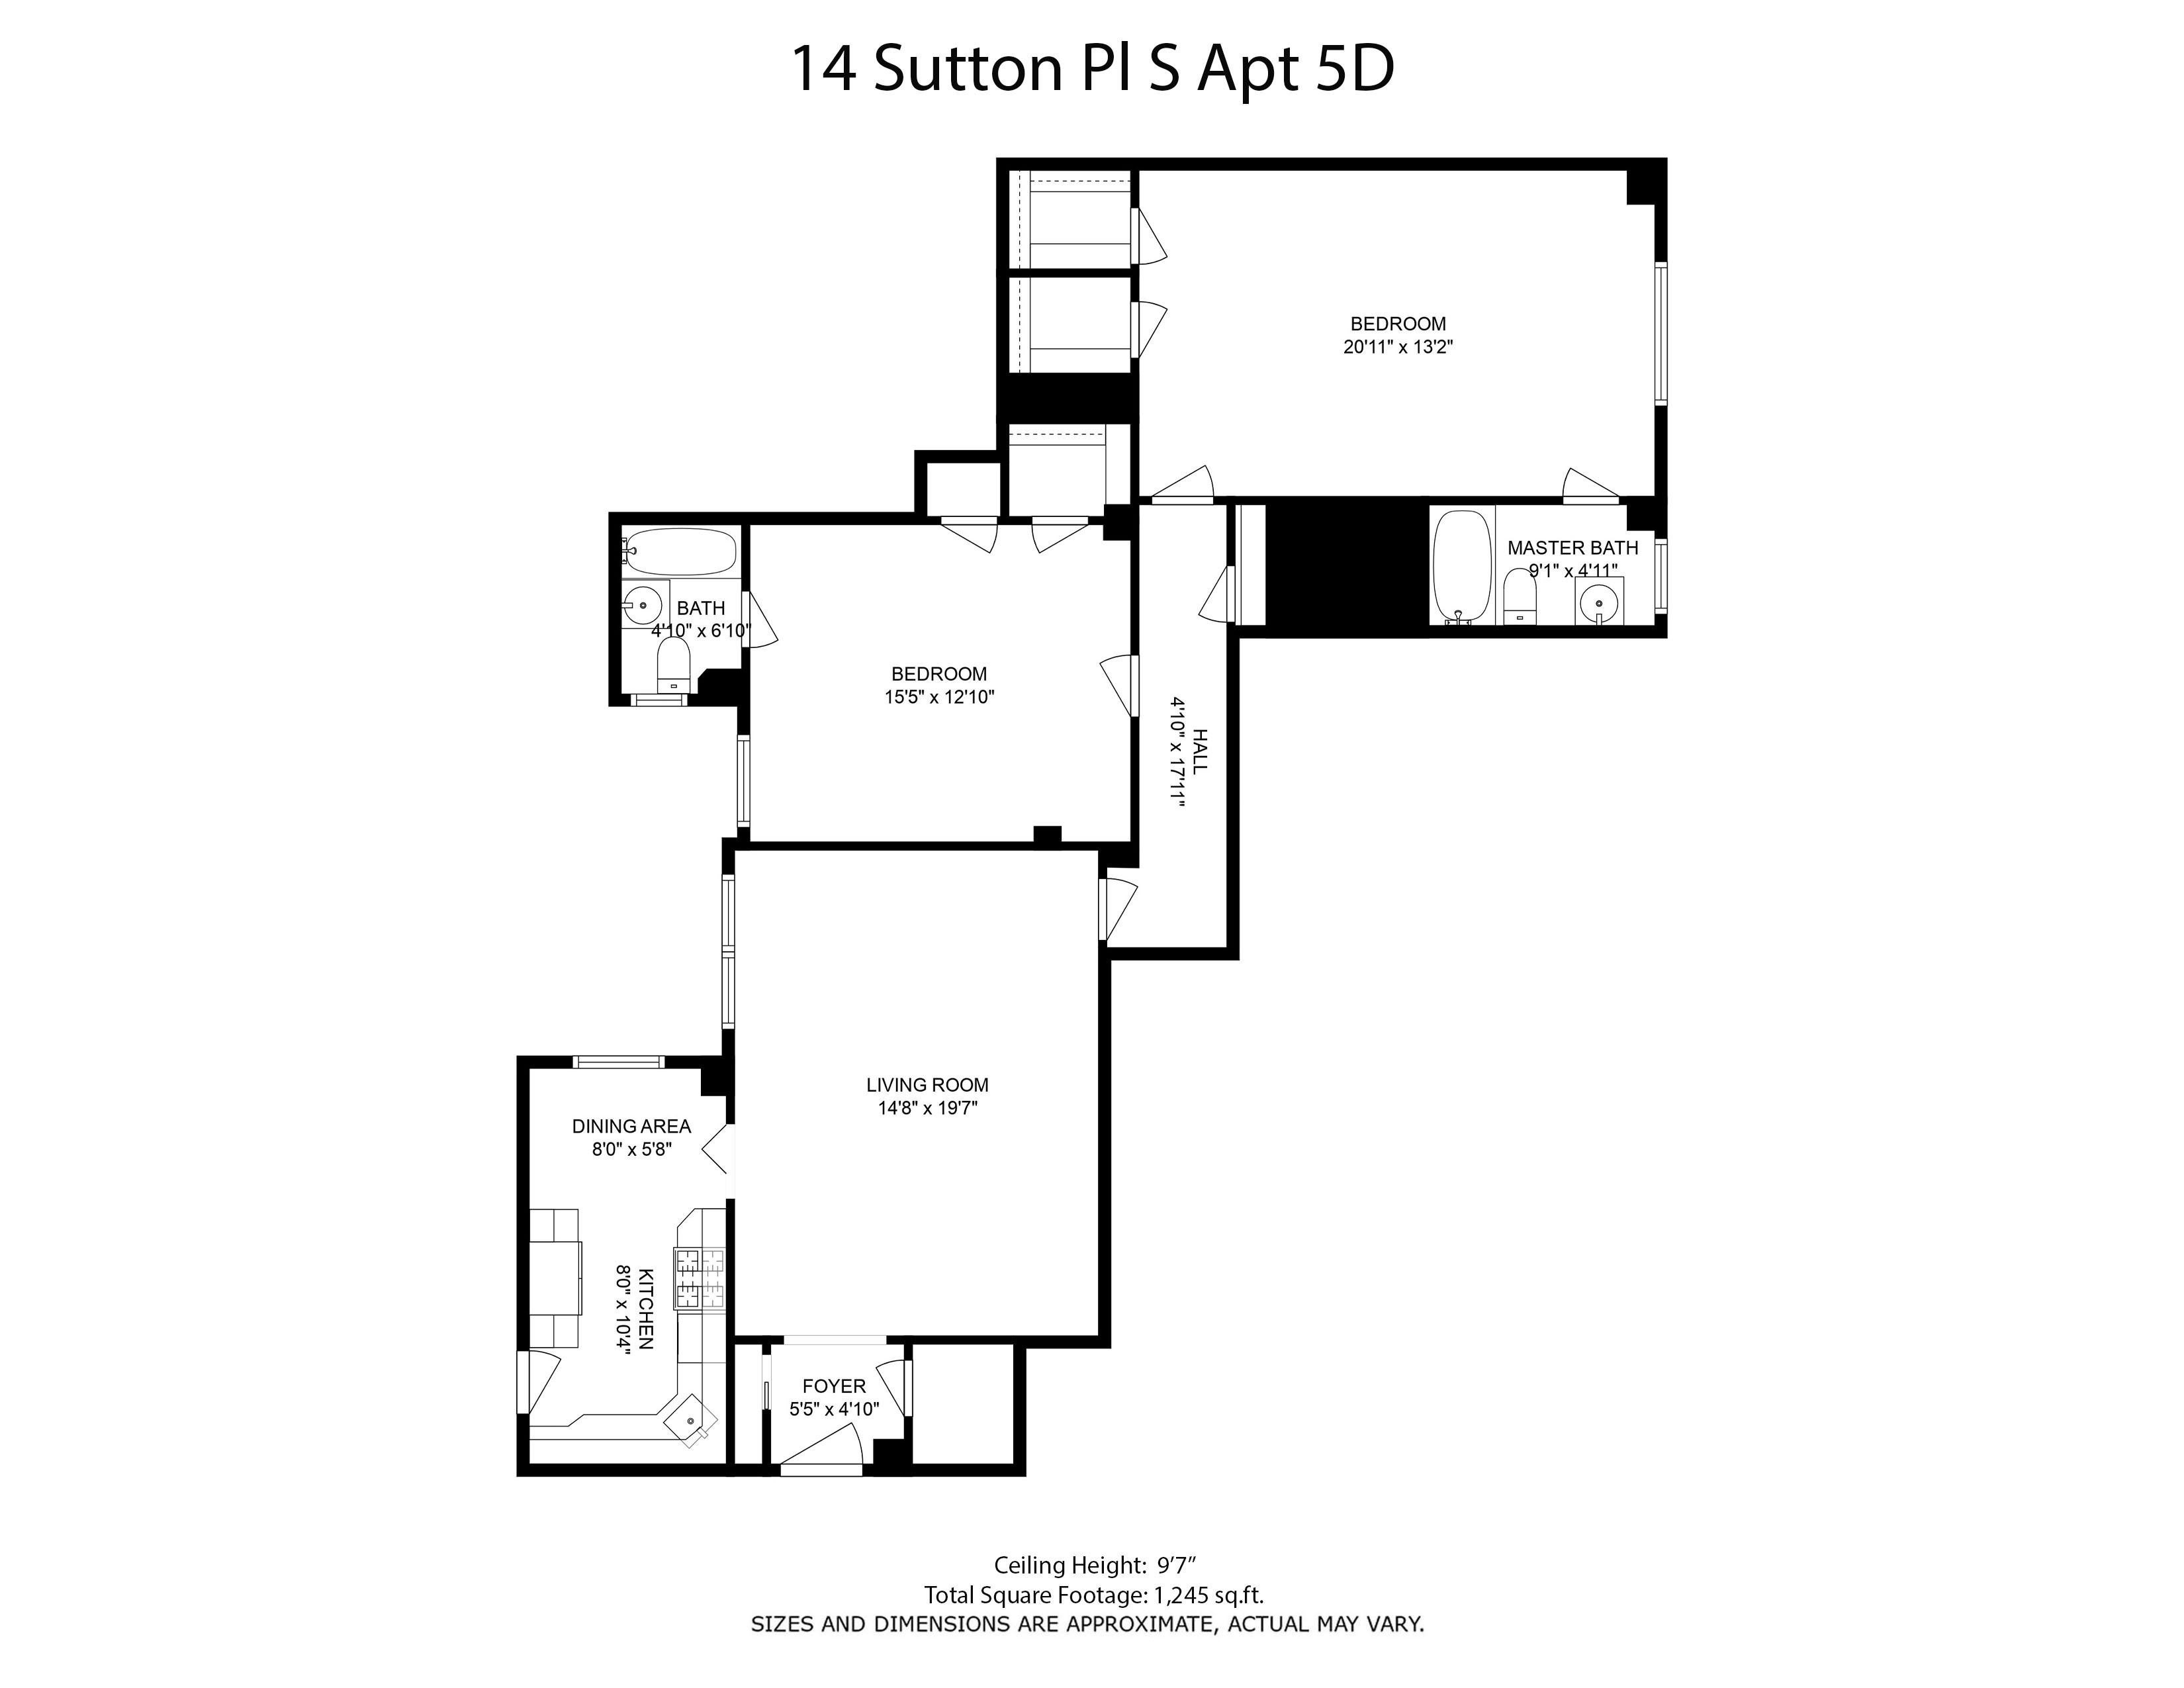 Floorplan for 14 Sutton Place, 5D